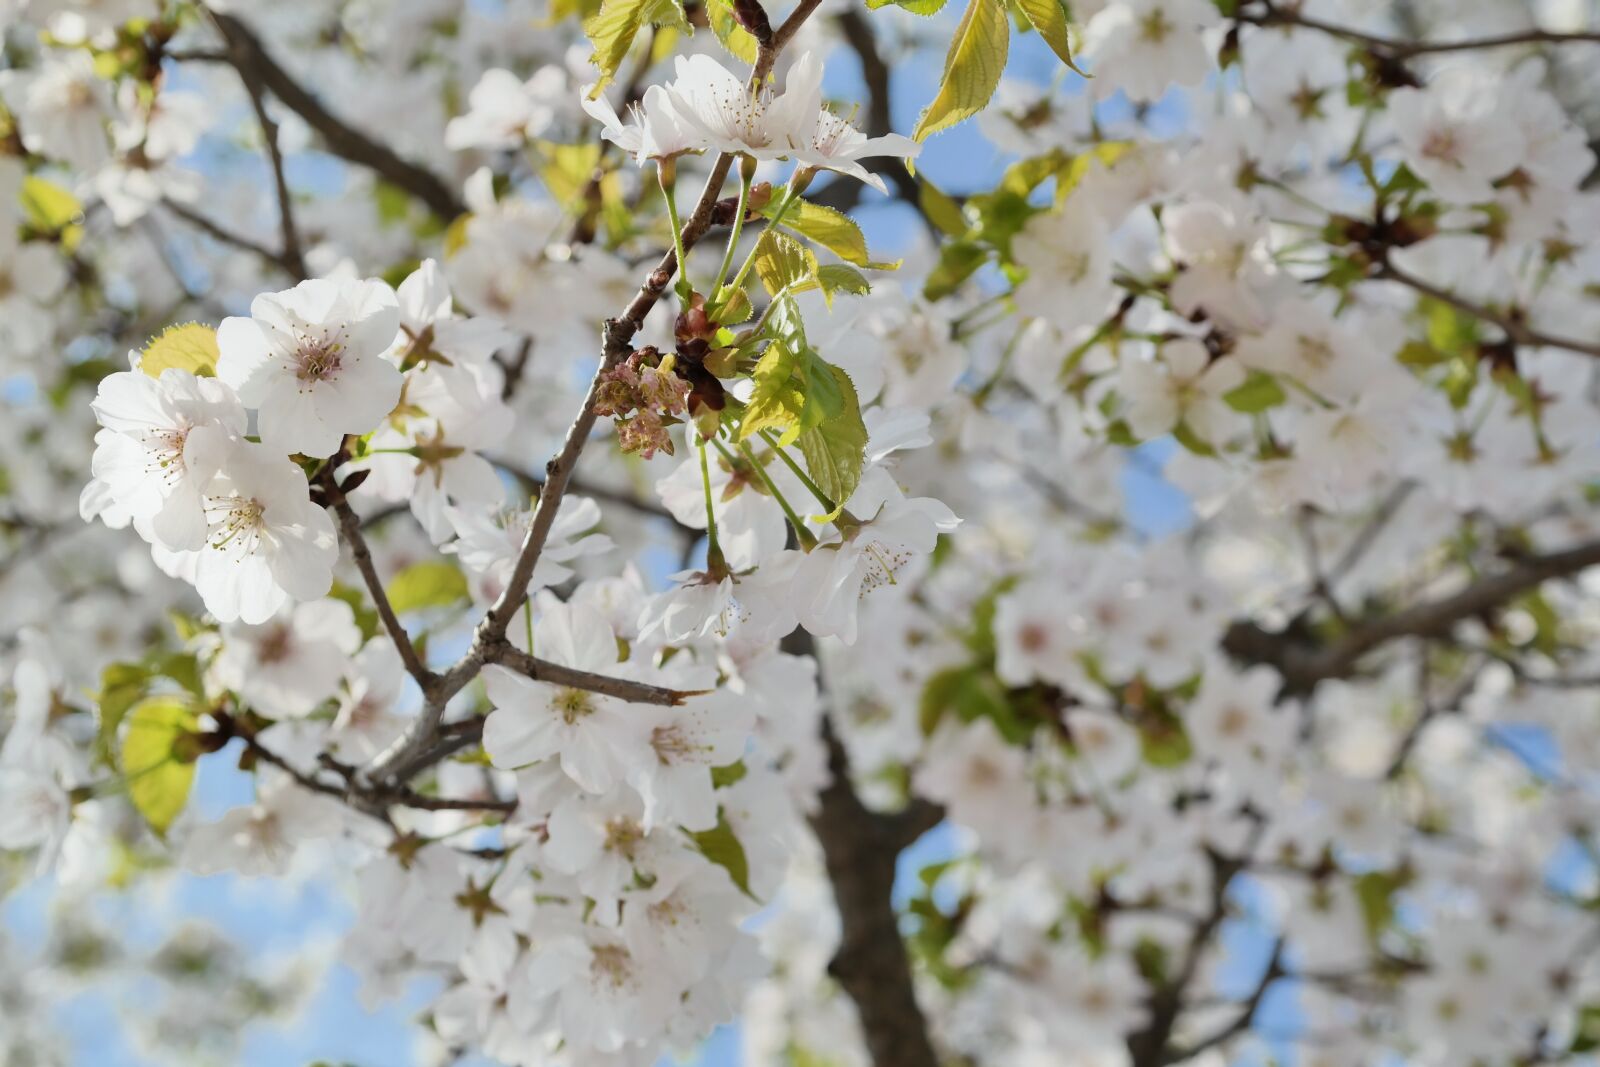 Samsung NX30 sample photo. Cherry blossom, sky, spring photography